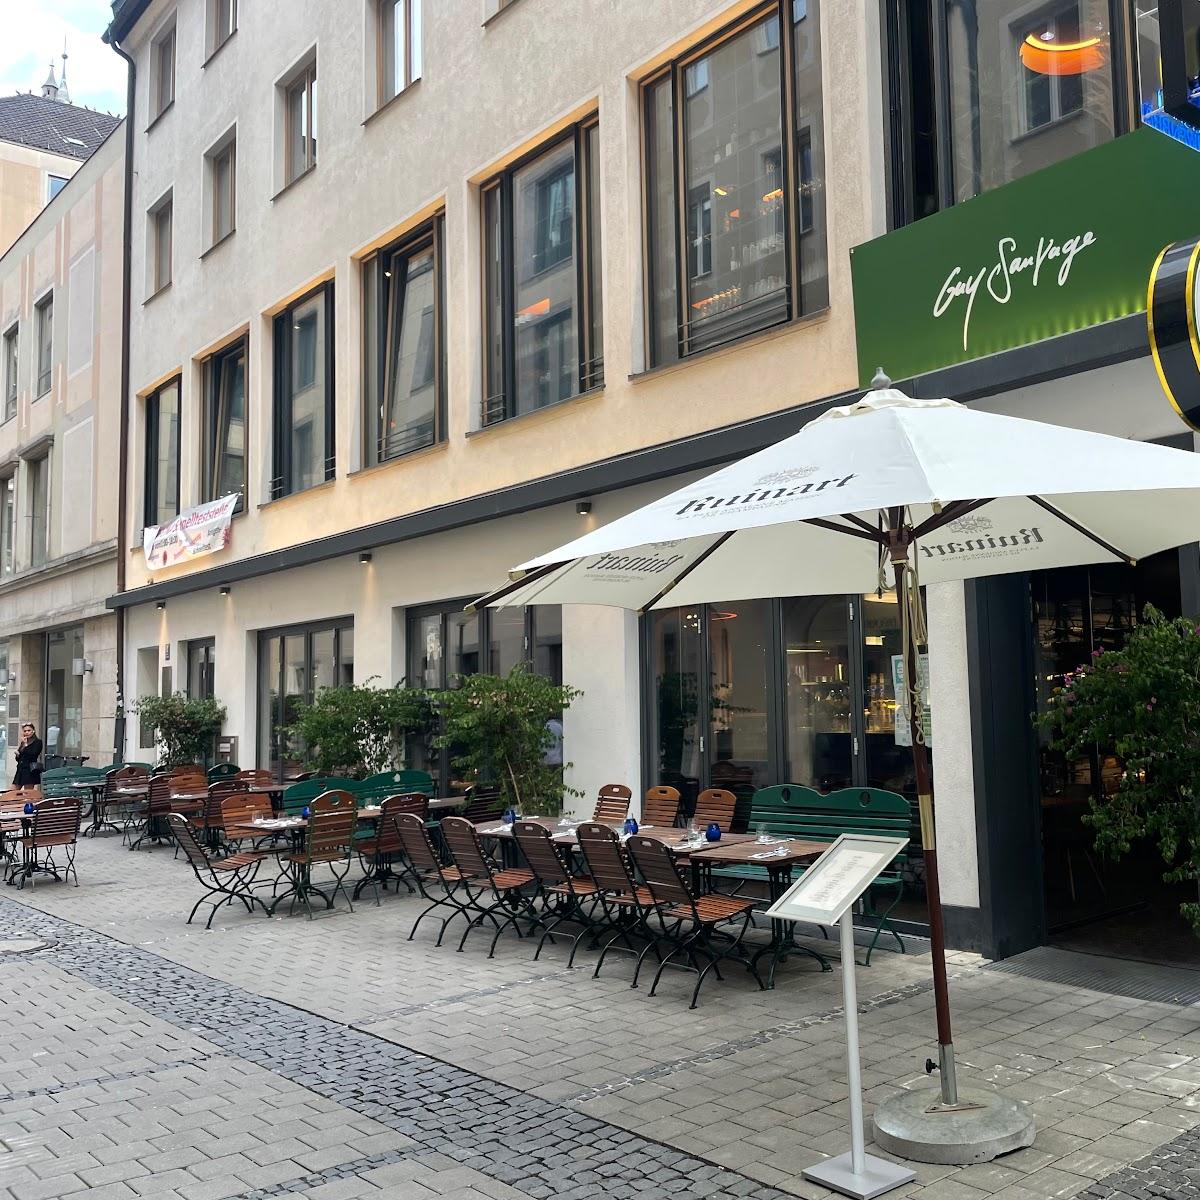 Restaurant "Guy Sauvage" in München